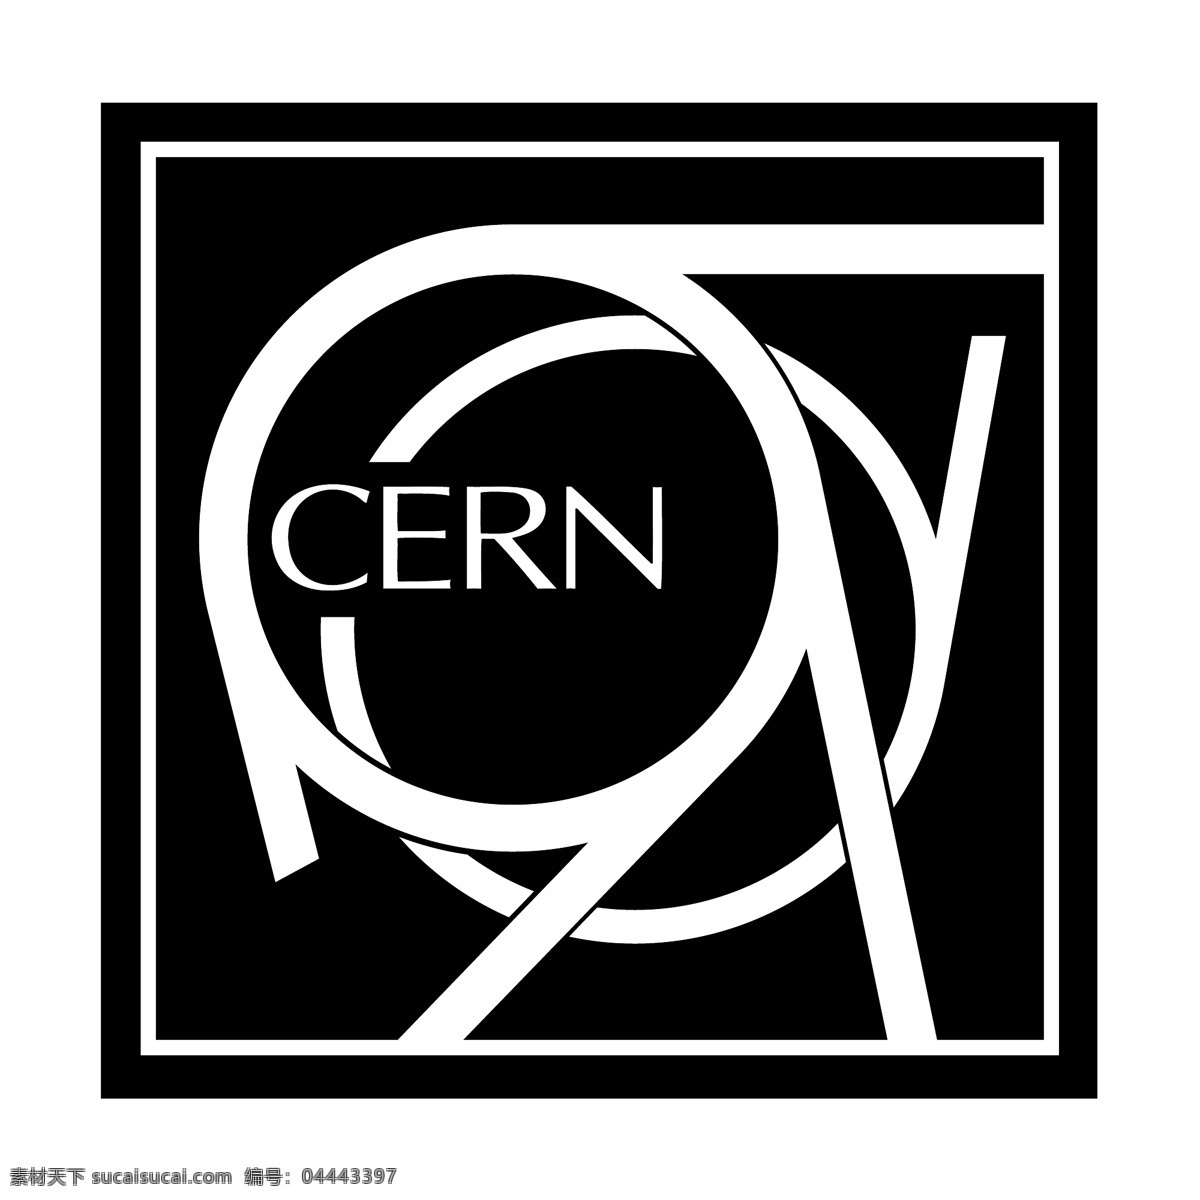 欧洲核子研究中心 自由 标志 标识 psd源文件 logo设计